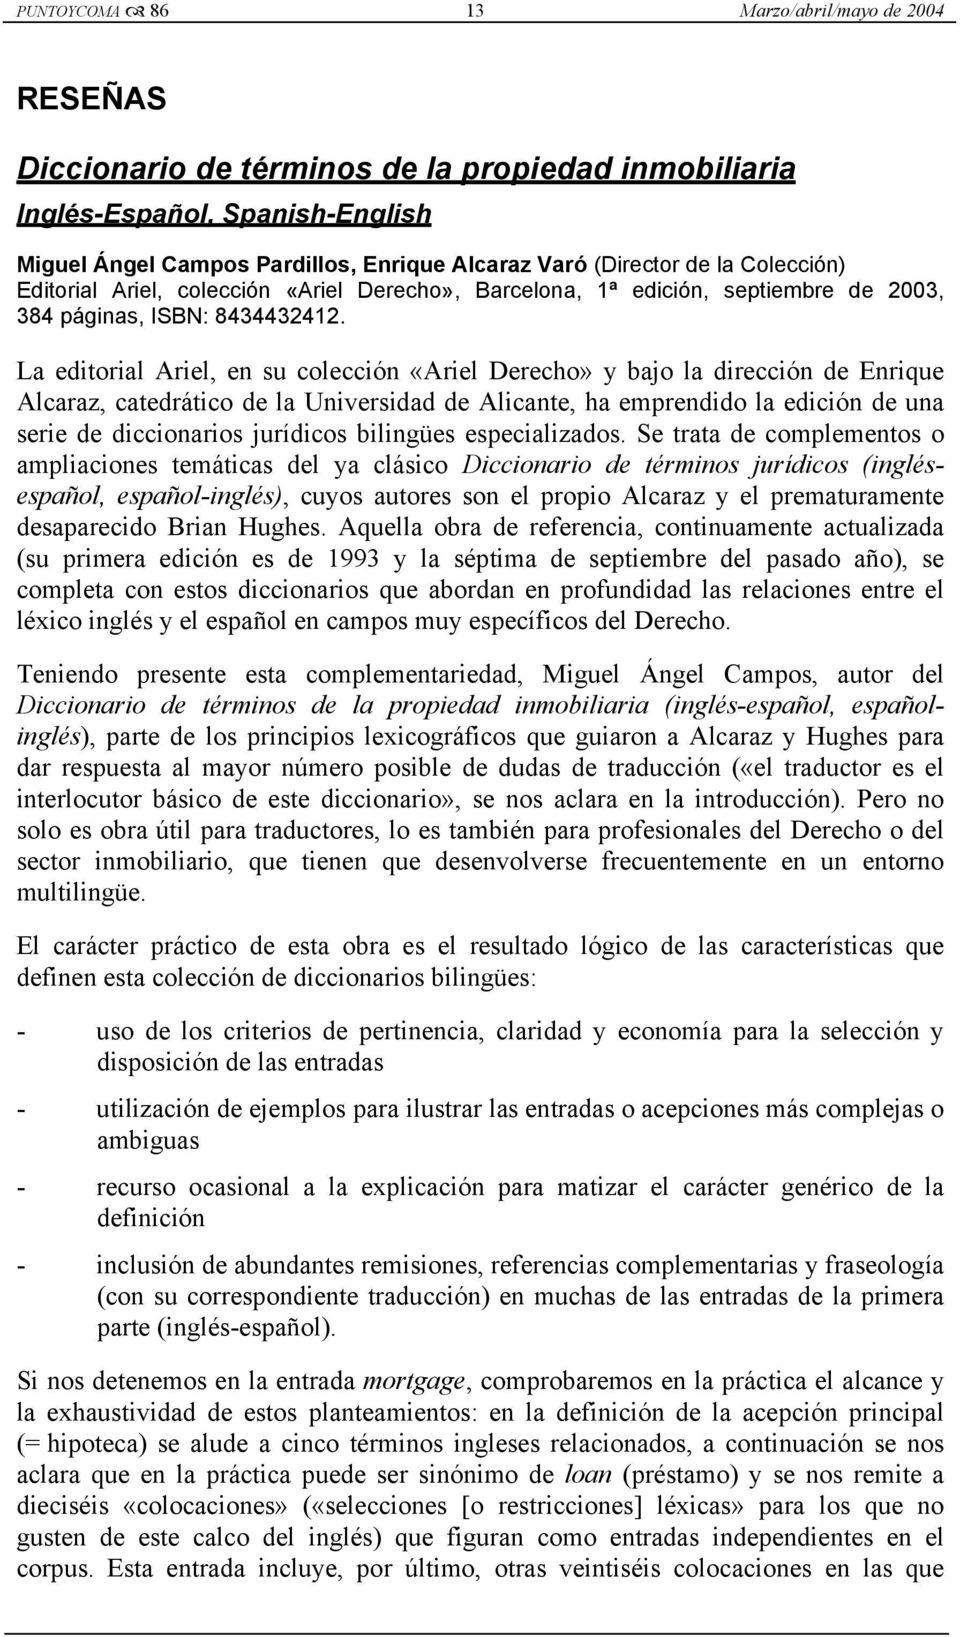 La editorial Ariel, en su colección «Ariel Derecho» y bajo la dirección de Enrique Alcaraz, catedrático de la Universidad de Alicante, ha emprendido la edición de una serie de diccionarios jurídicos